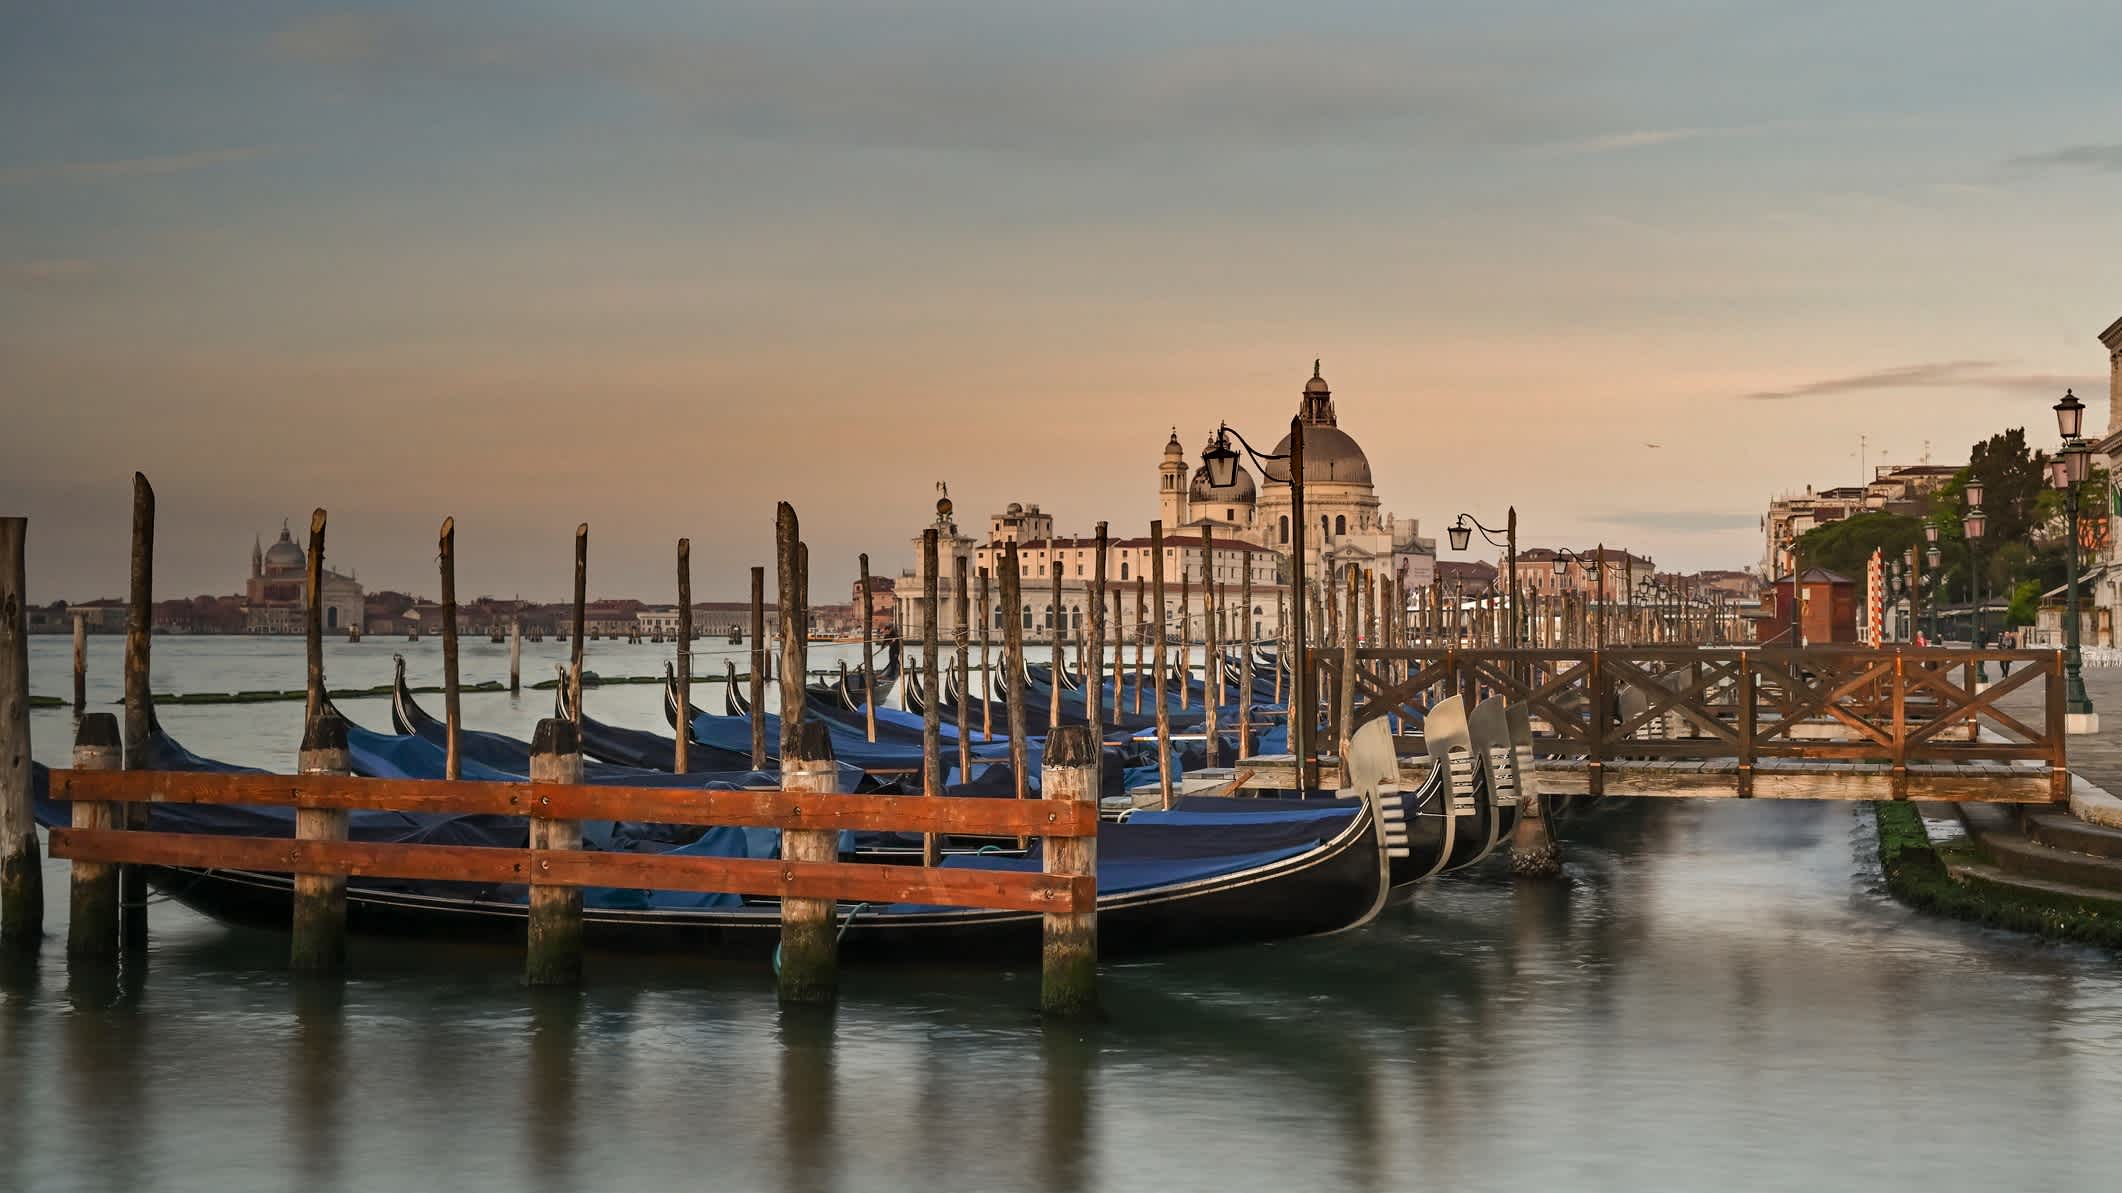 Le coucher de soleil sur la promenade de la Riva degli Schiavoni avec les gondoles, à Venise, Italie.
